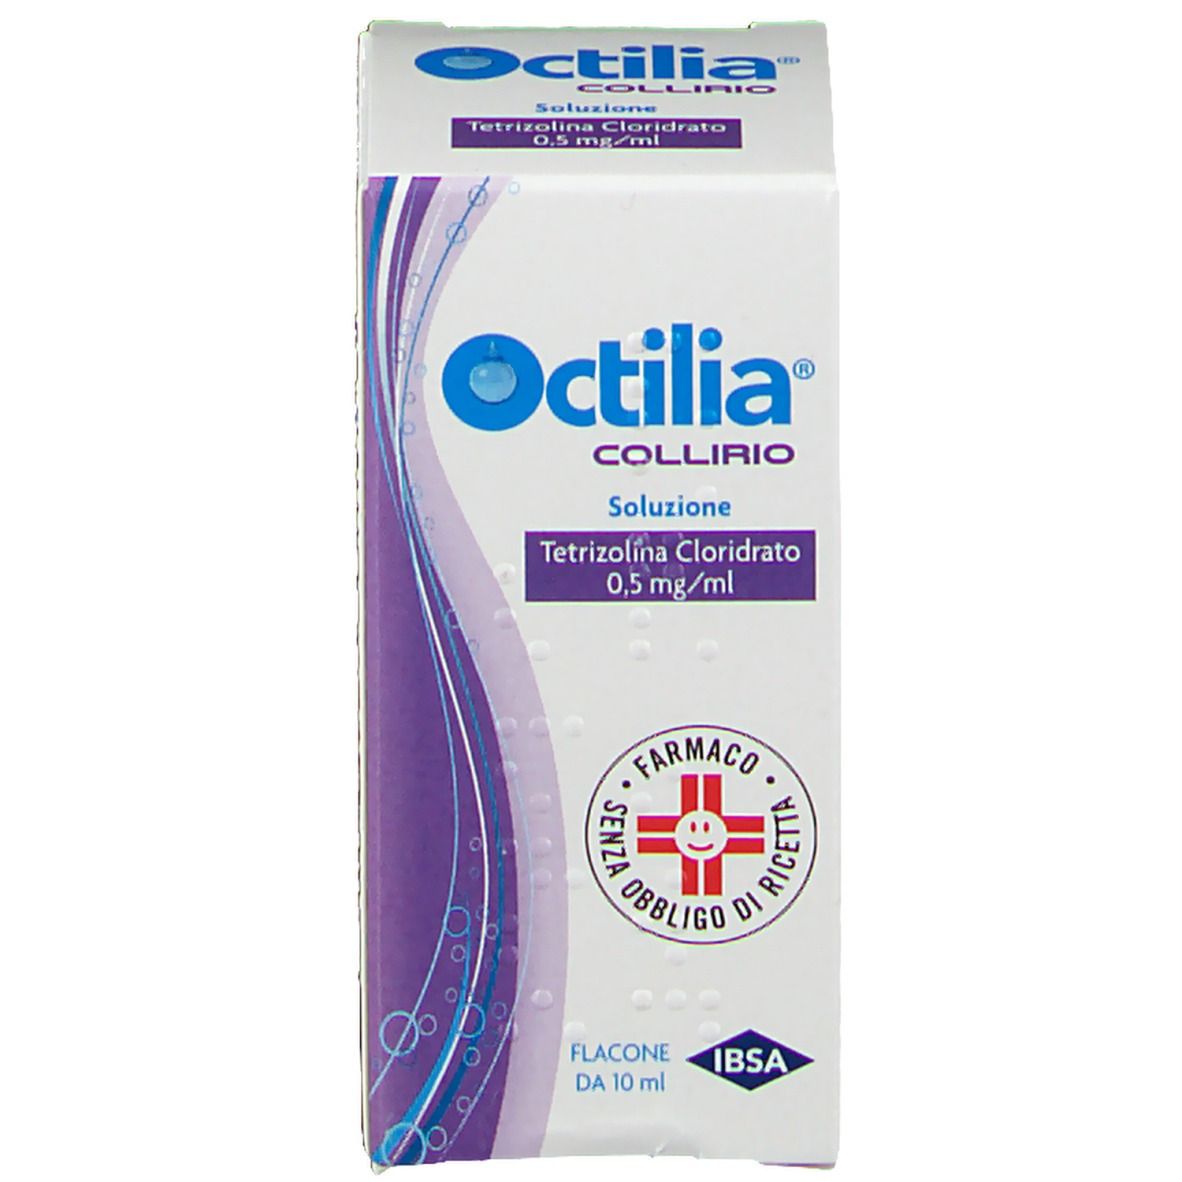 Octilia Collirio 10ml 0.5mg/ml